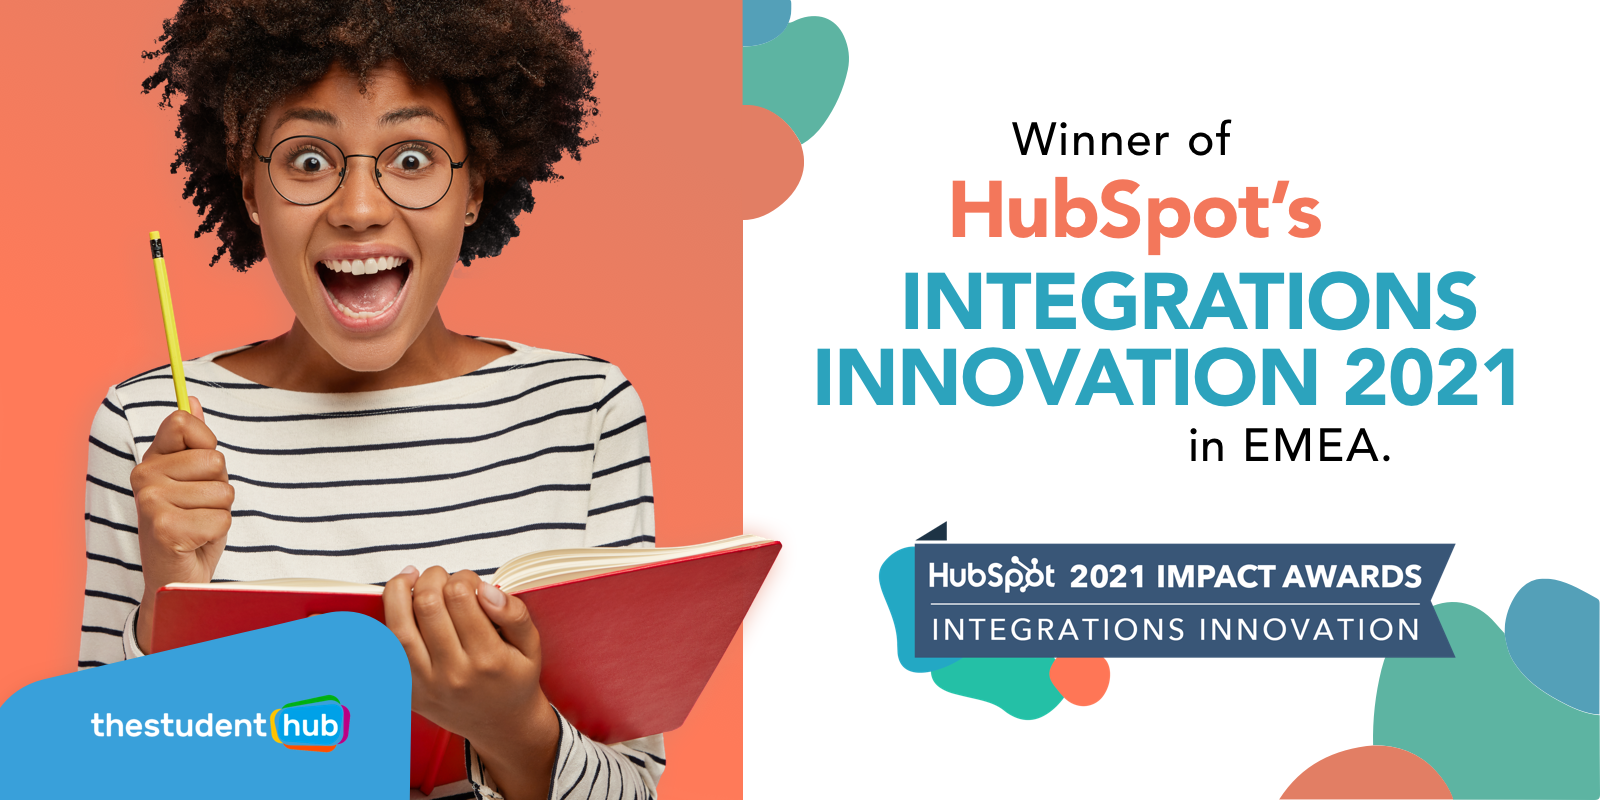 HubSpot integration innovation impact award winner